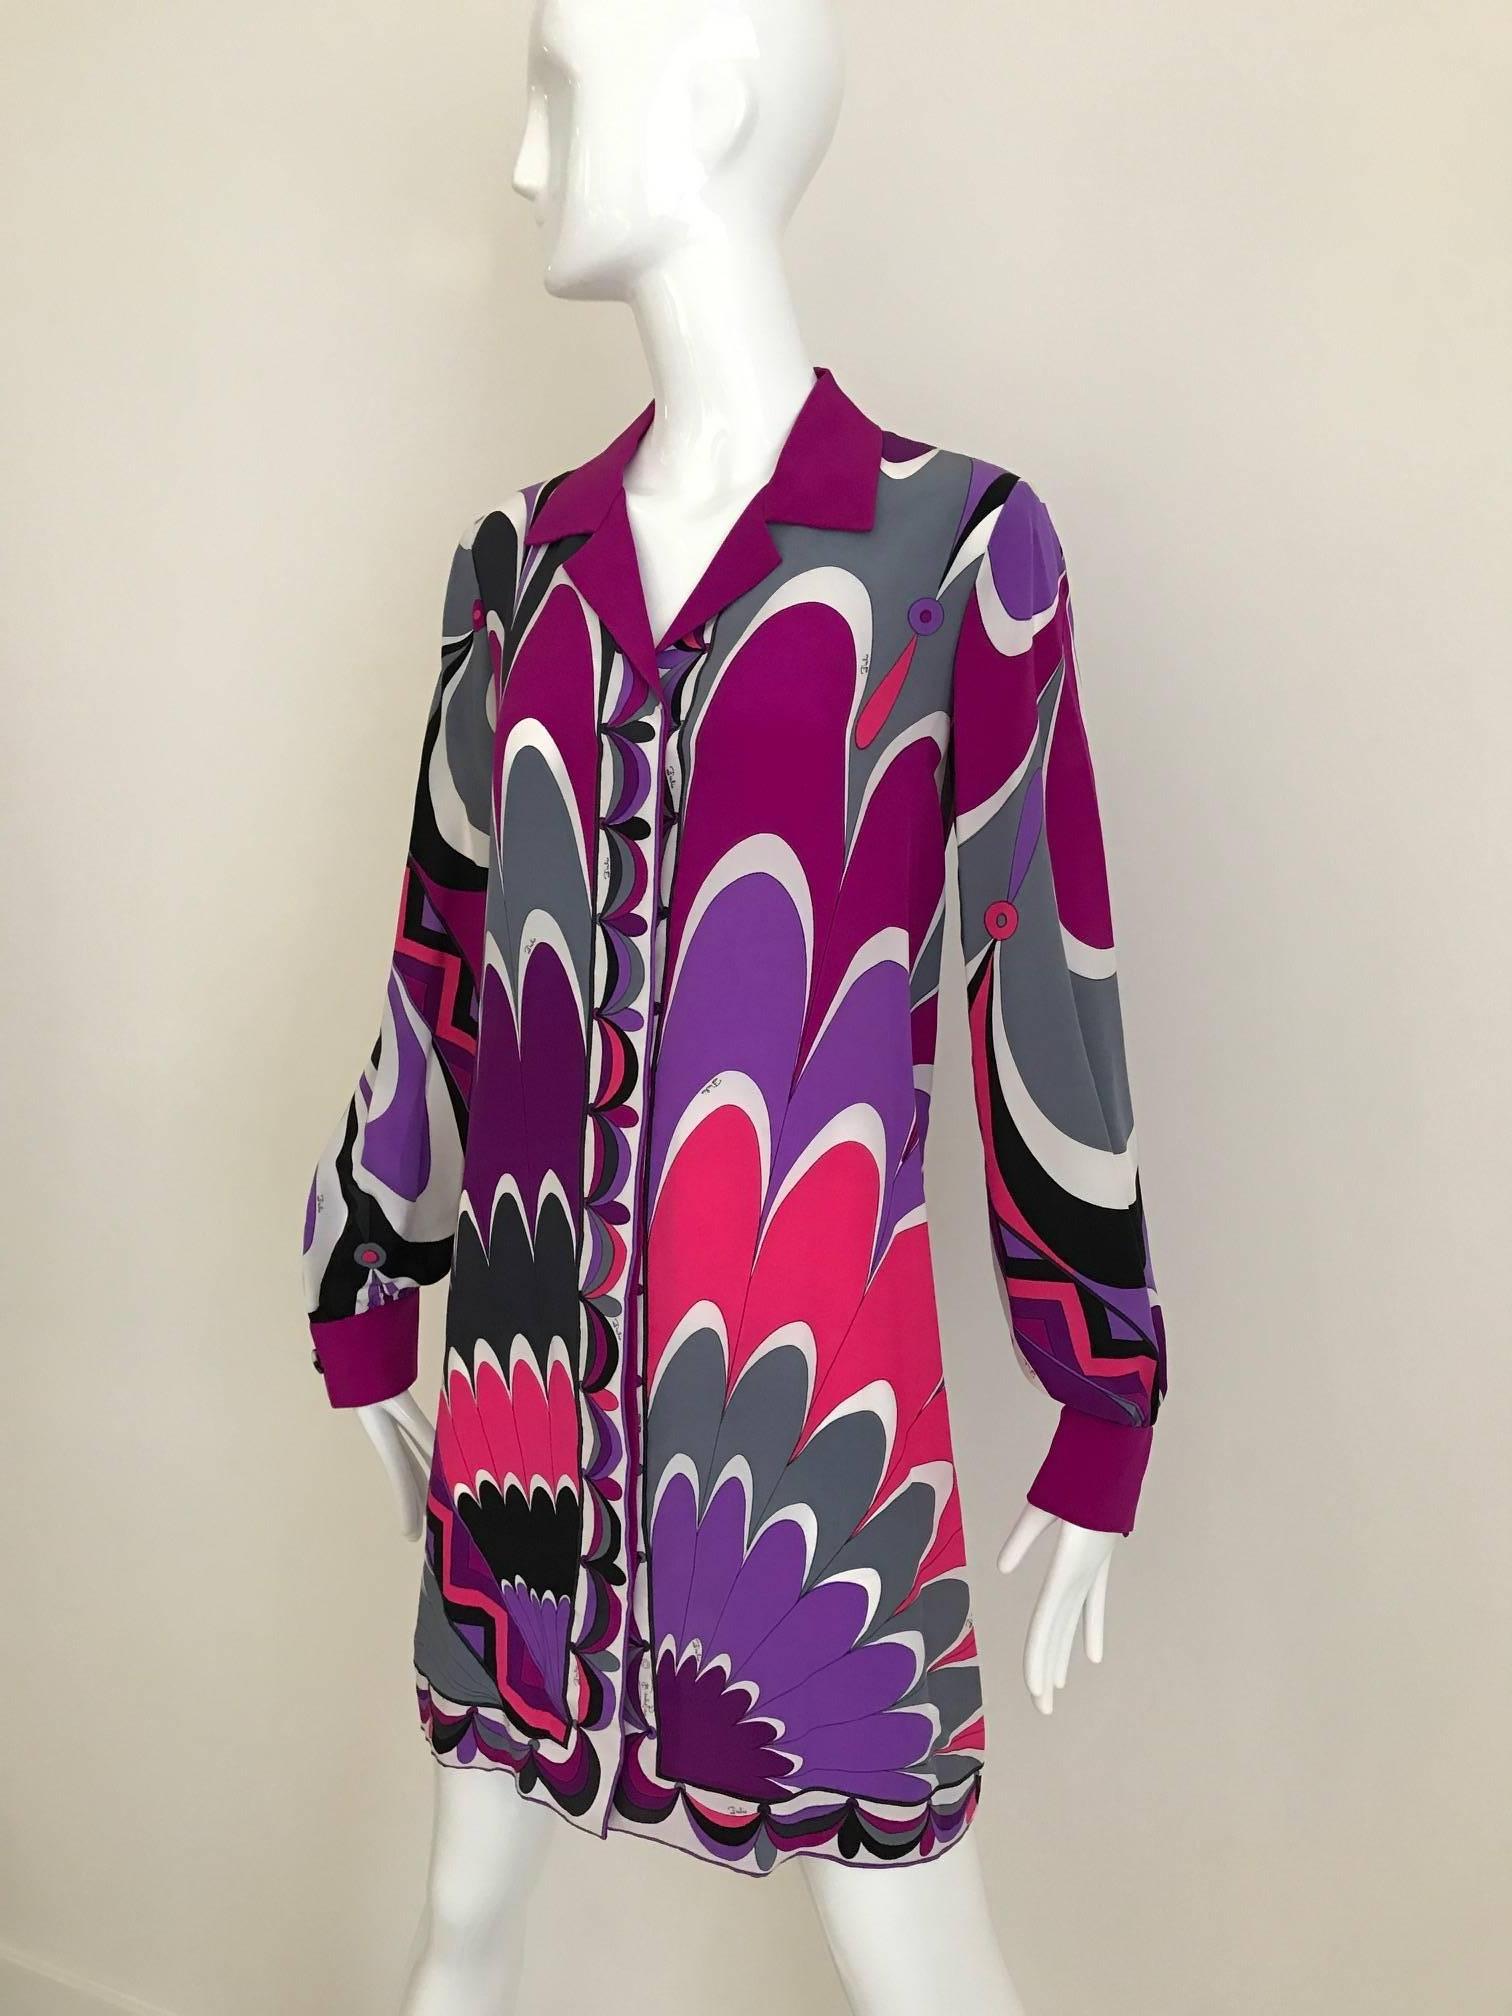 Vintage 1970s Emilio Pucci Silk Long Sleeve Mini Tunika Kleid in Vibrant fuschia, lila, schwarz und grau drucken. Diese Seiden-Tunika kann als langes Hemd getragen werden oder ist perfekt zum Überziehen am Strand!  Diese Tunika / Seidenhemd in sehr